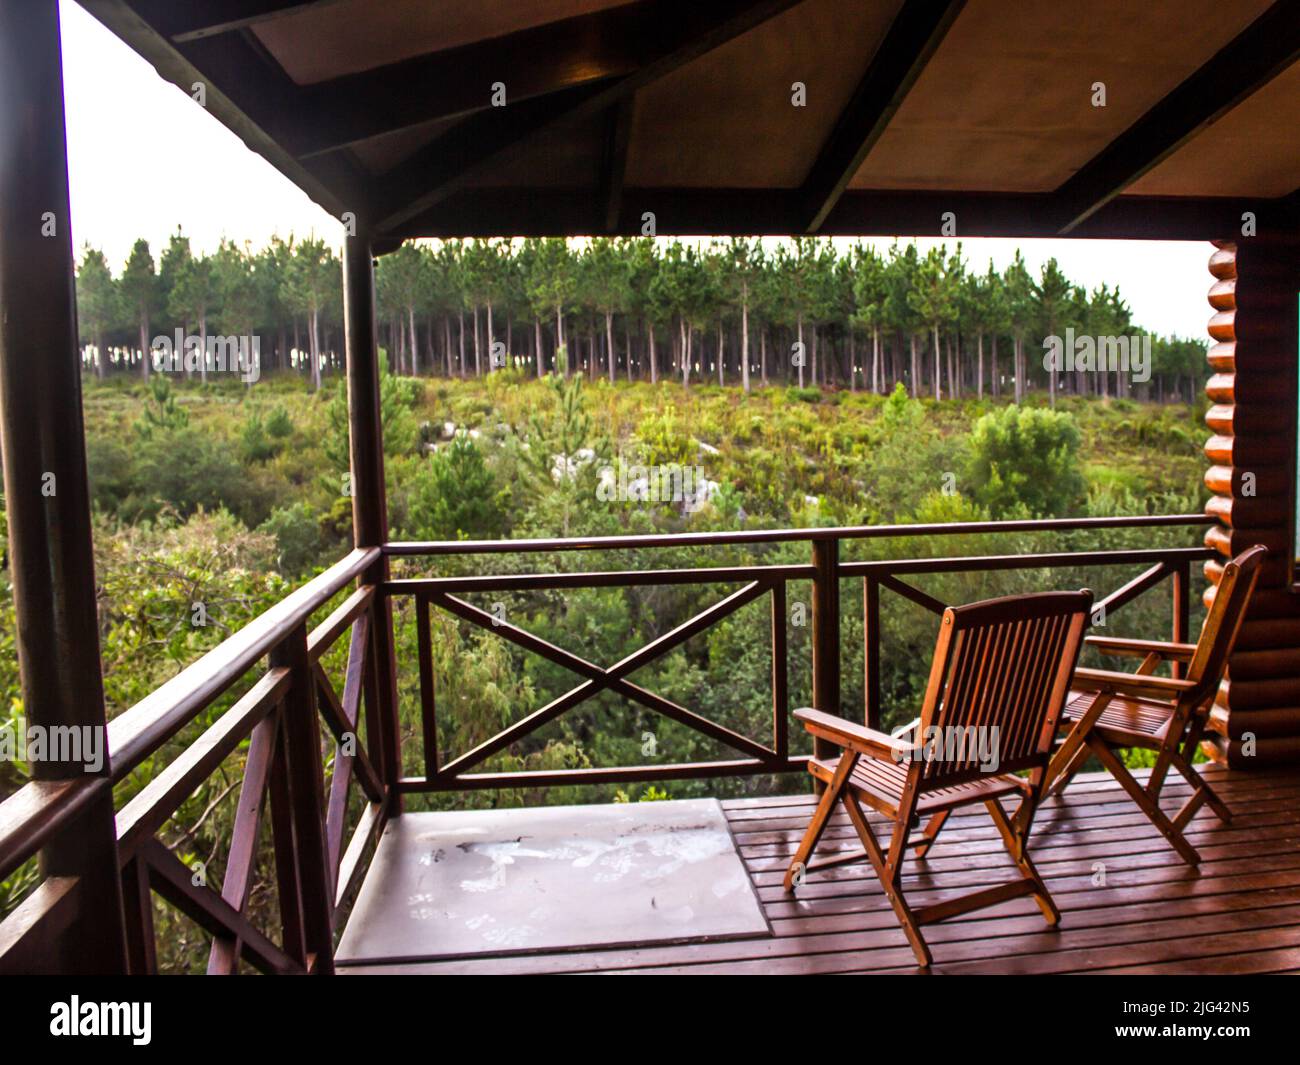 Une vue tranquille depuis une cabine en bois, avec une plantation de pins en arrière-plan, sur la route des jardins de l'Afrique du Sud. Banque D'Images